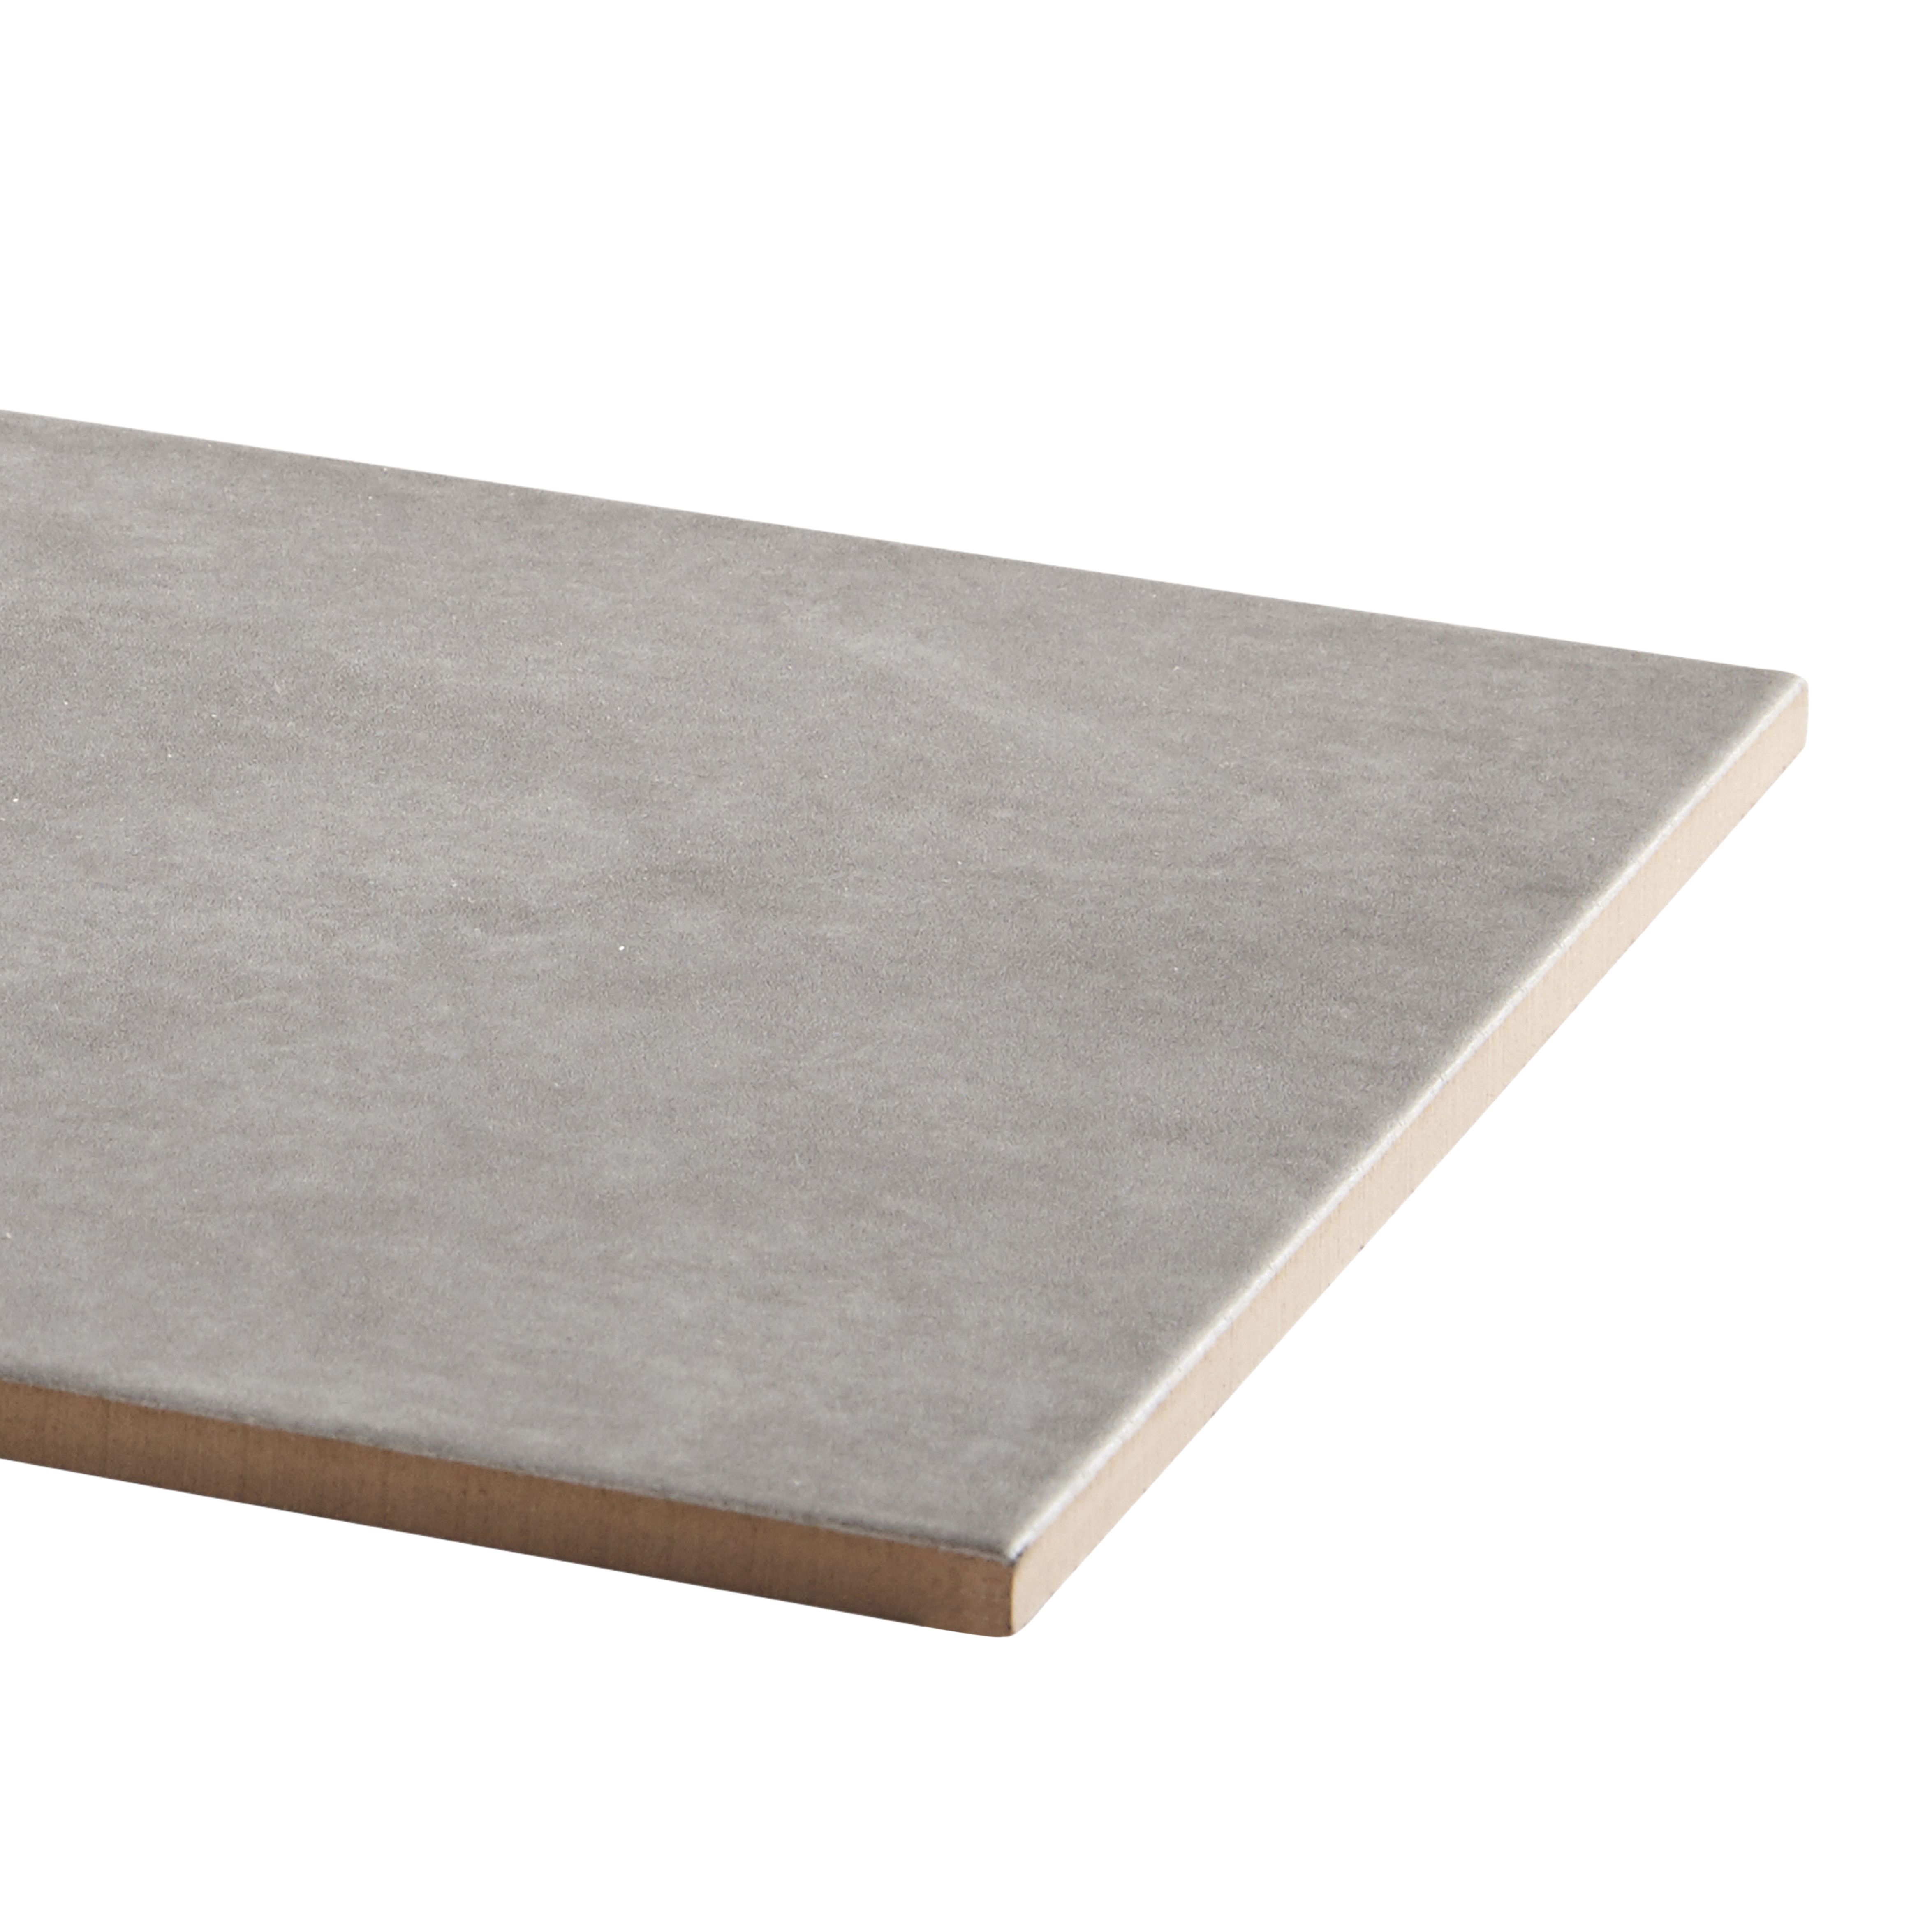 Cimenti Grey Matt Flat Ceramic Wall Tile, Pack of 10, (L)402.4mm (W)251.6mm